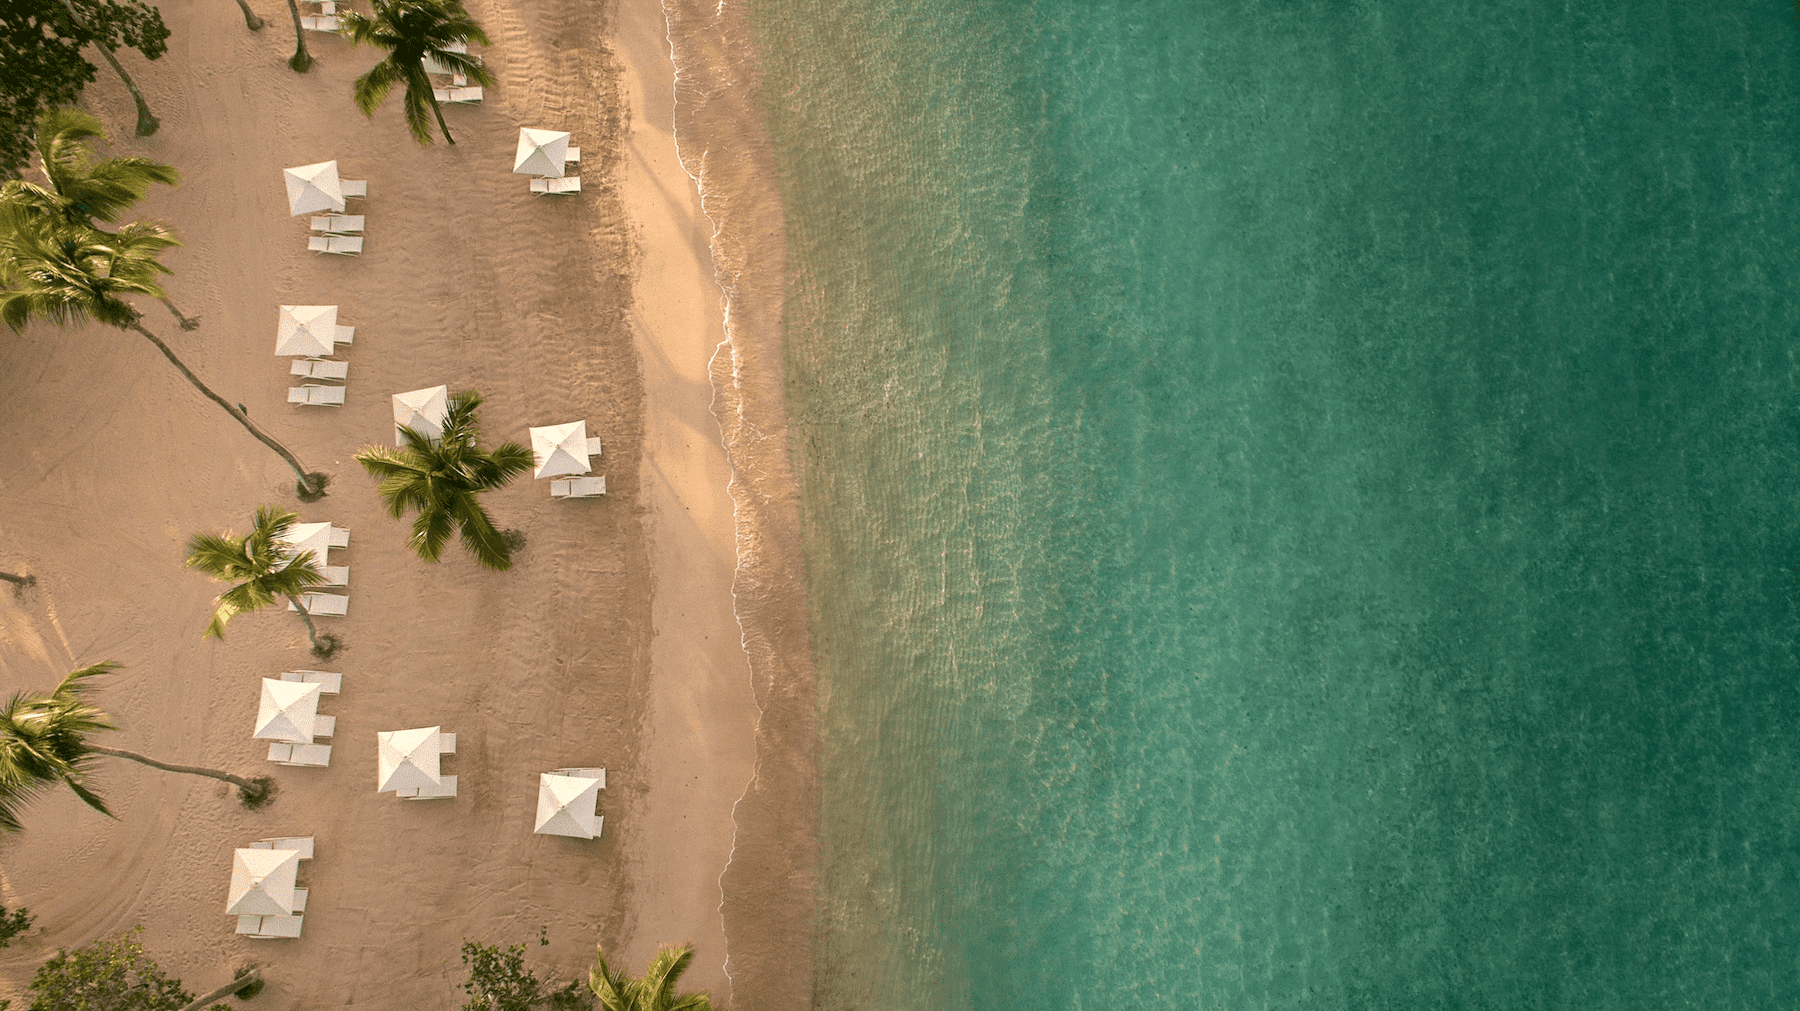 Aerial View of Minitas Beach at Casa de Campo Resort & Villas in the Caribbean